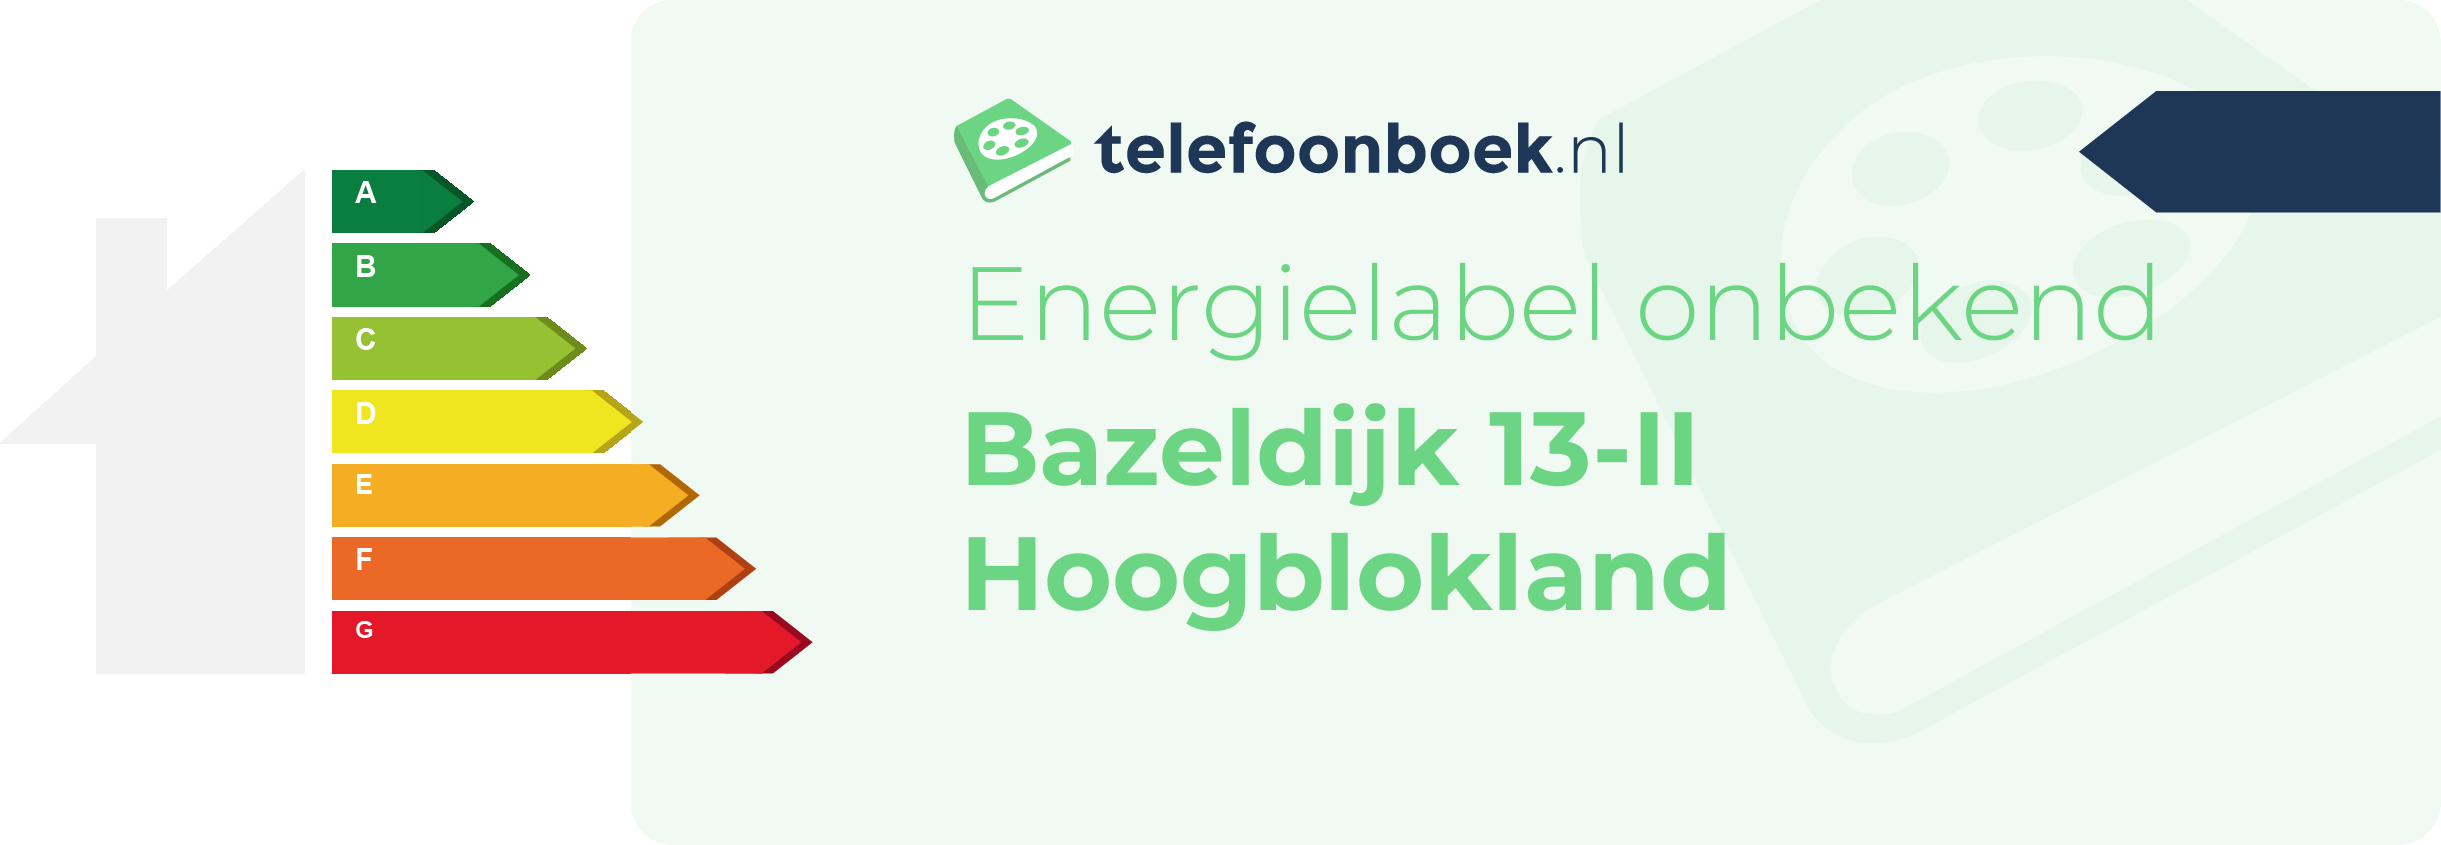 Energielabel Bazeldijk 13-II Hoogblokland